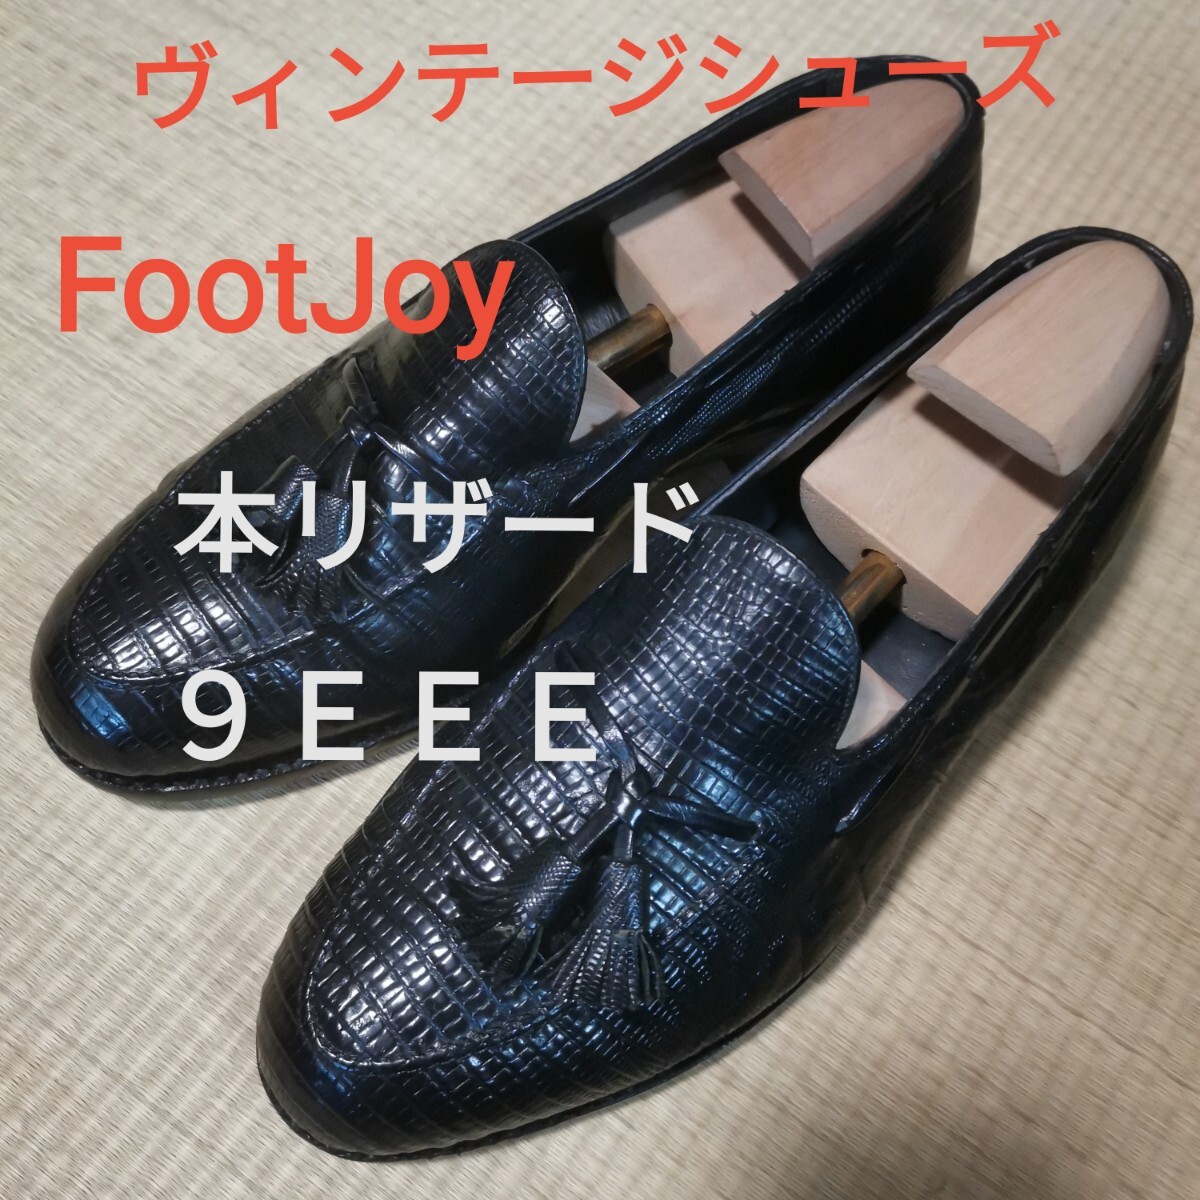 【本リザード・ヴィンテージ】FootJoy 9EEE タッセルローファー 貴重な幅広